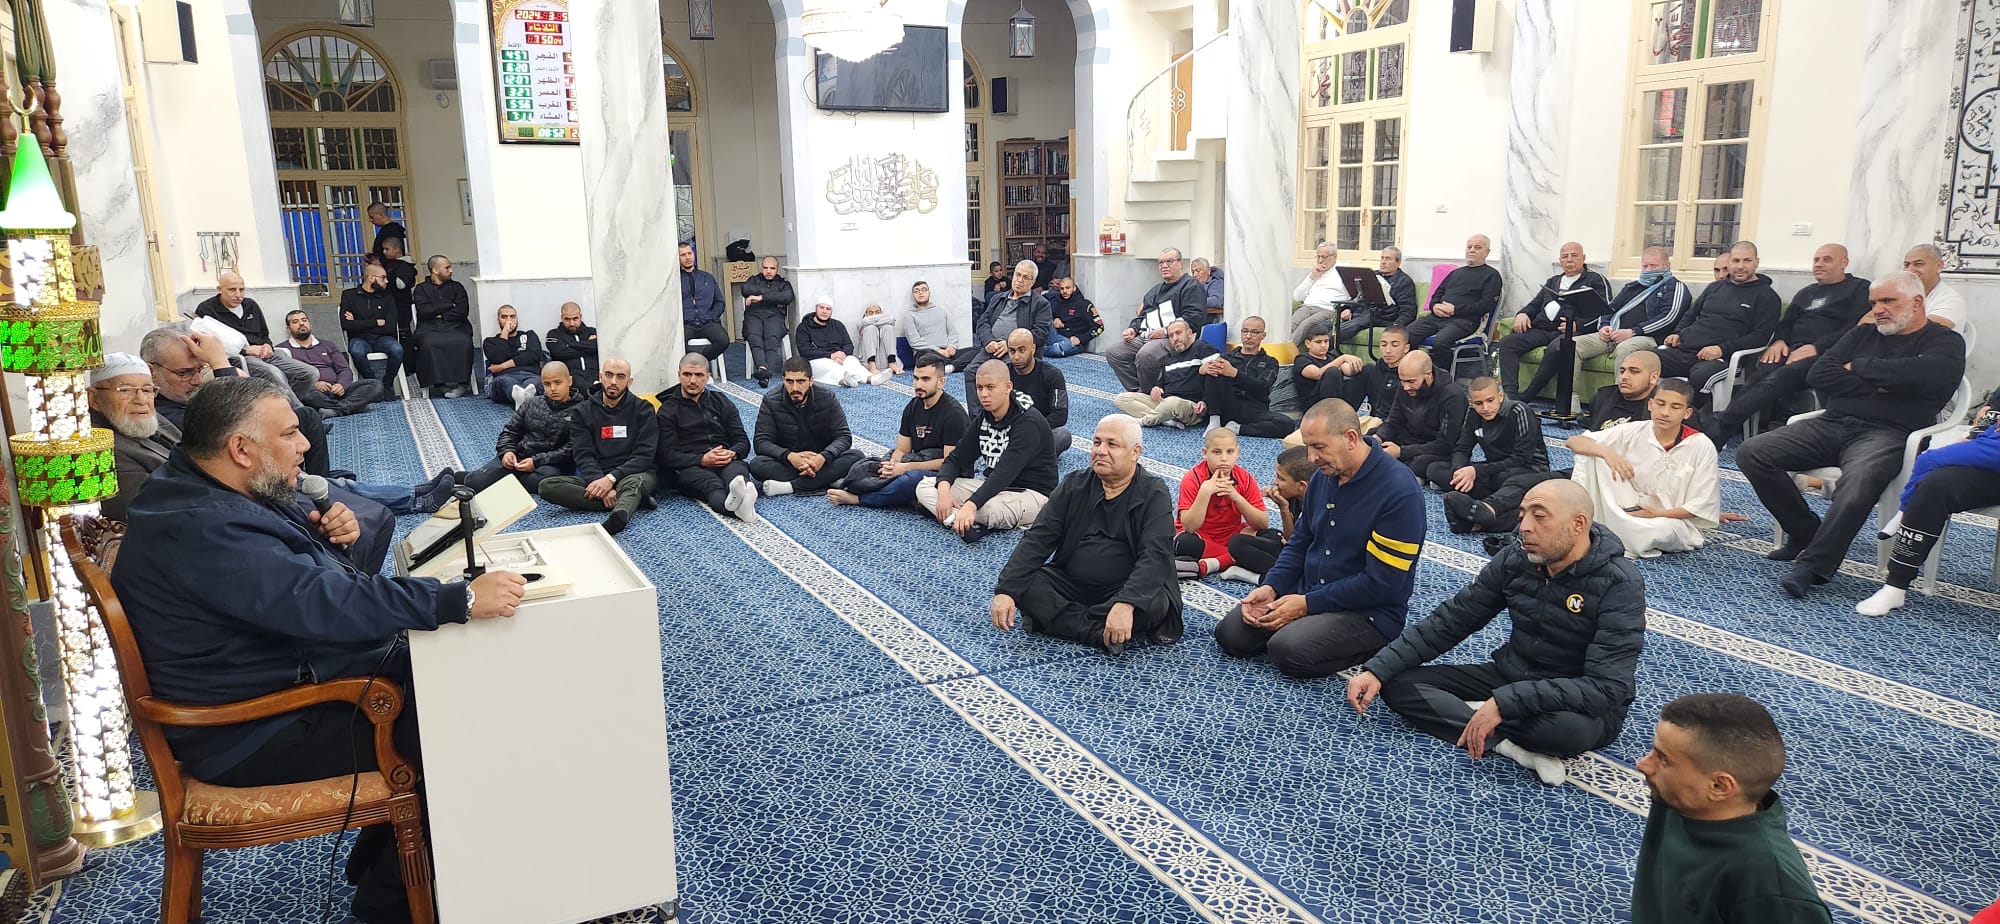 يافا: بالصور إنطلاق أسبوع الدعوة بأمسية في مسجد النزهة